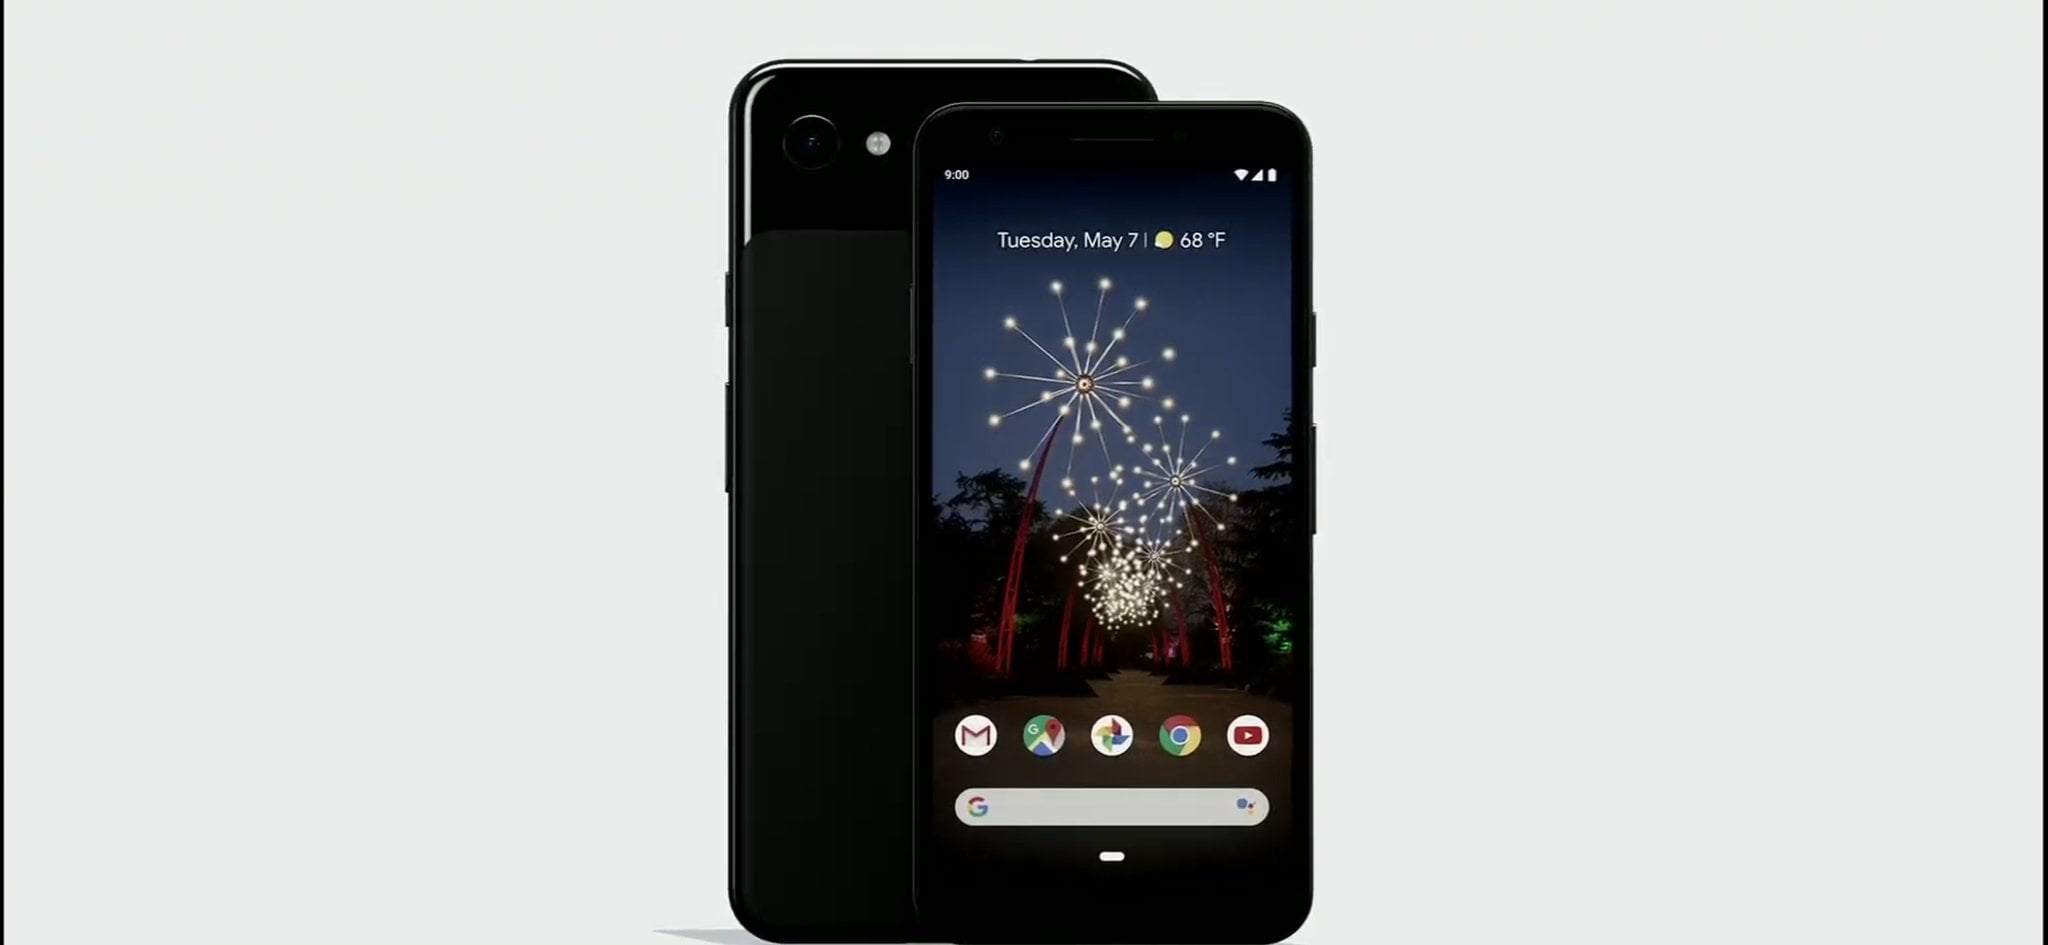 Google Pixel 3a & Pixel 3a XL Announced At Google I/O 2019